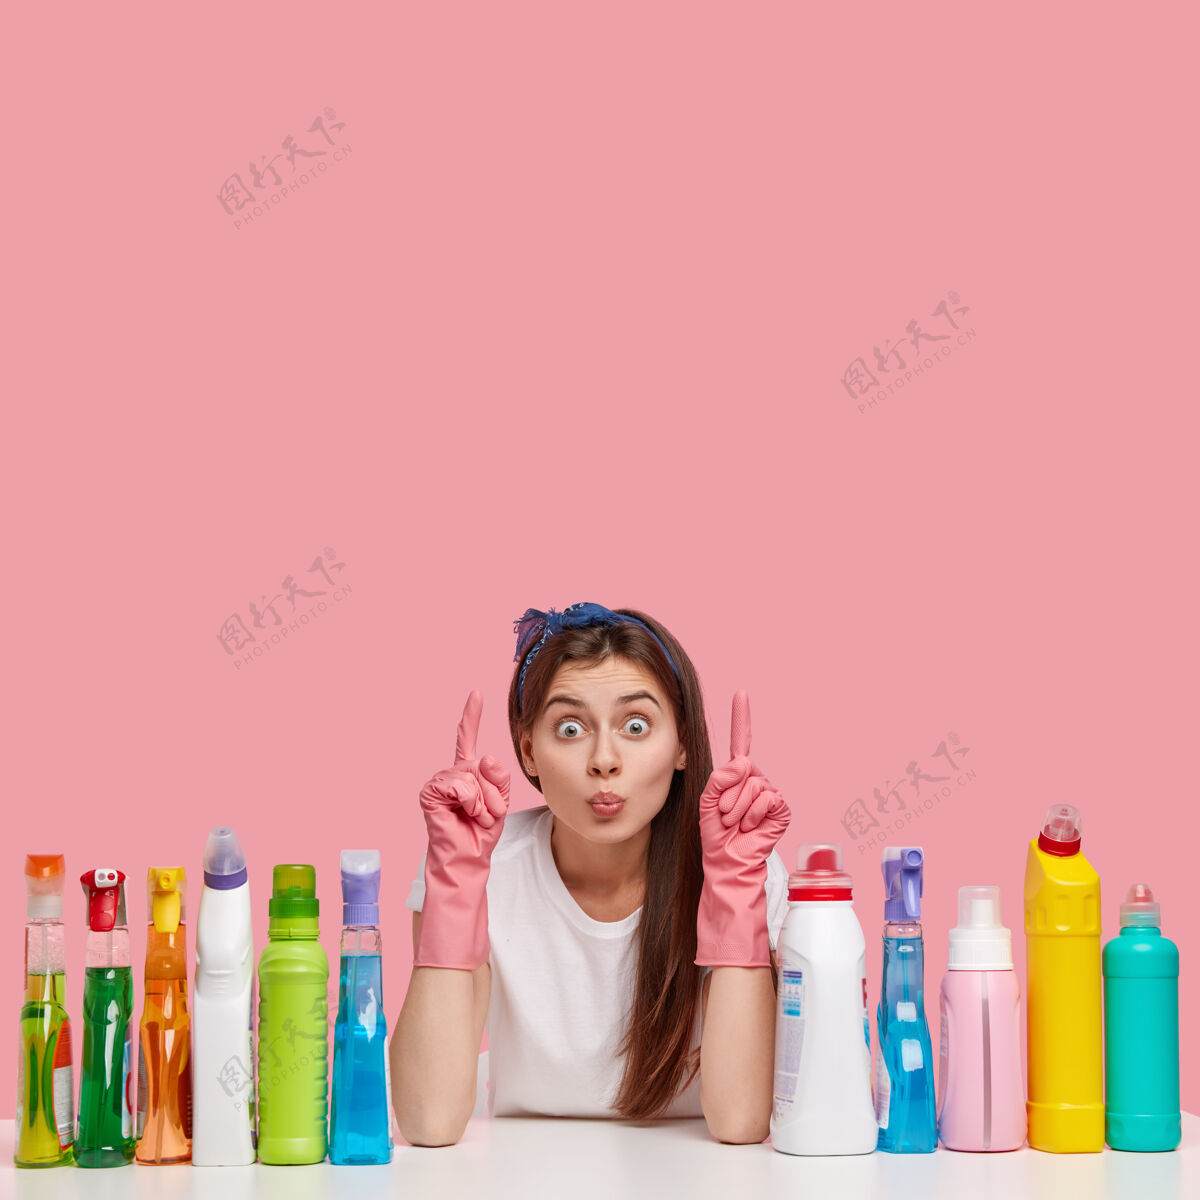 指点迷人女人的垂直镜头保持双唇合拢 指向上方空白处 显示要清洗的地方 周围是各种洗涤剂的瓶子 戴着橡胶防护手套 头带女人清洗清洁剂